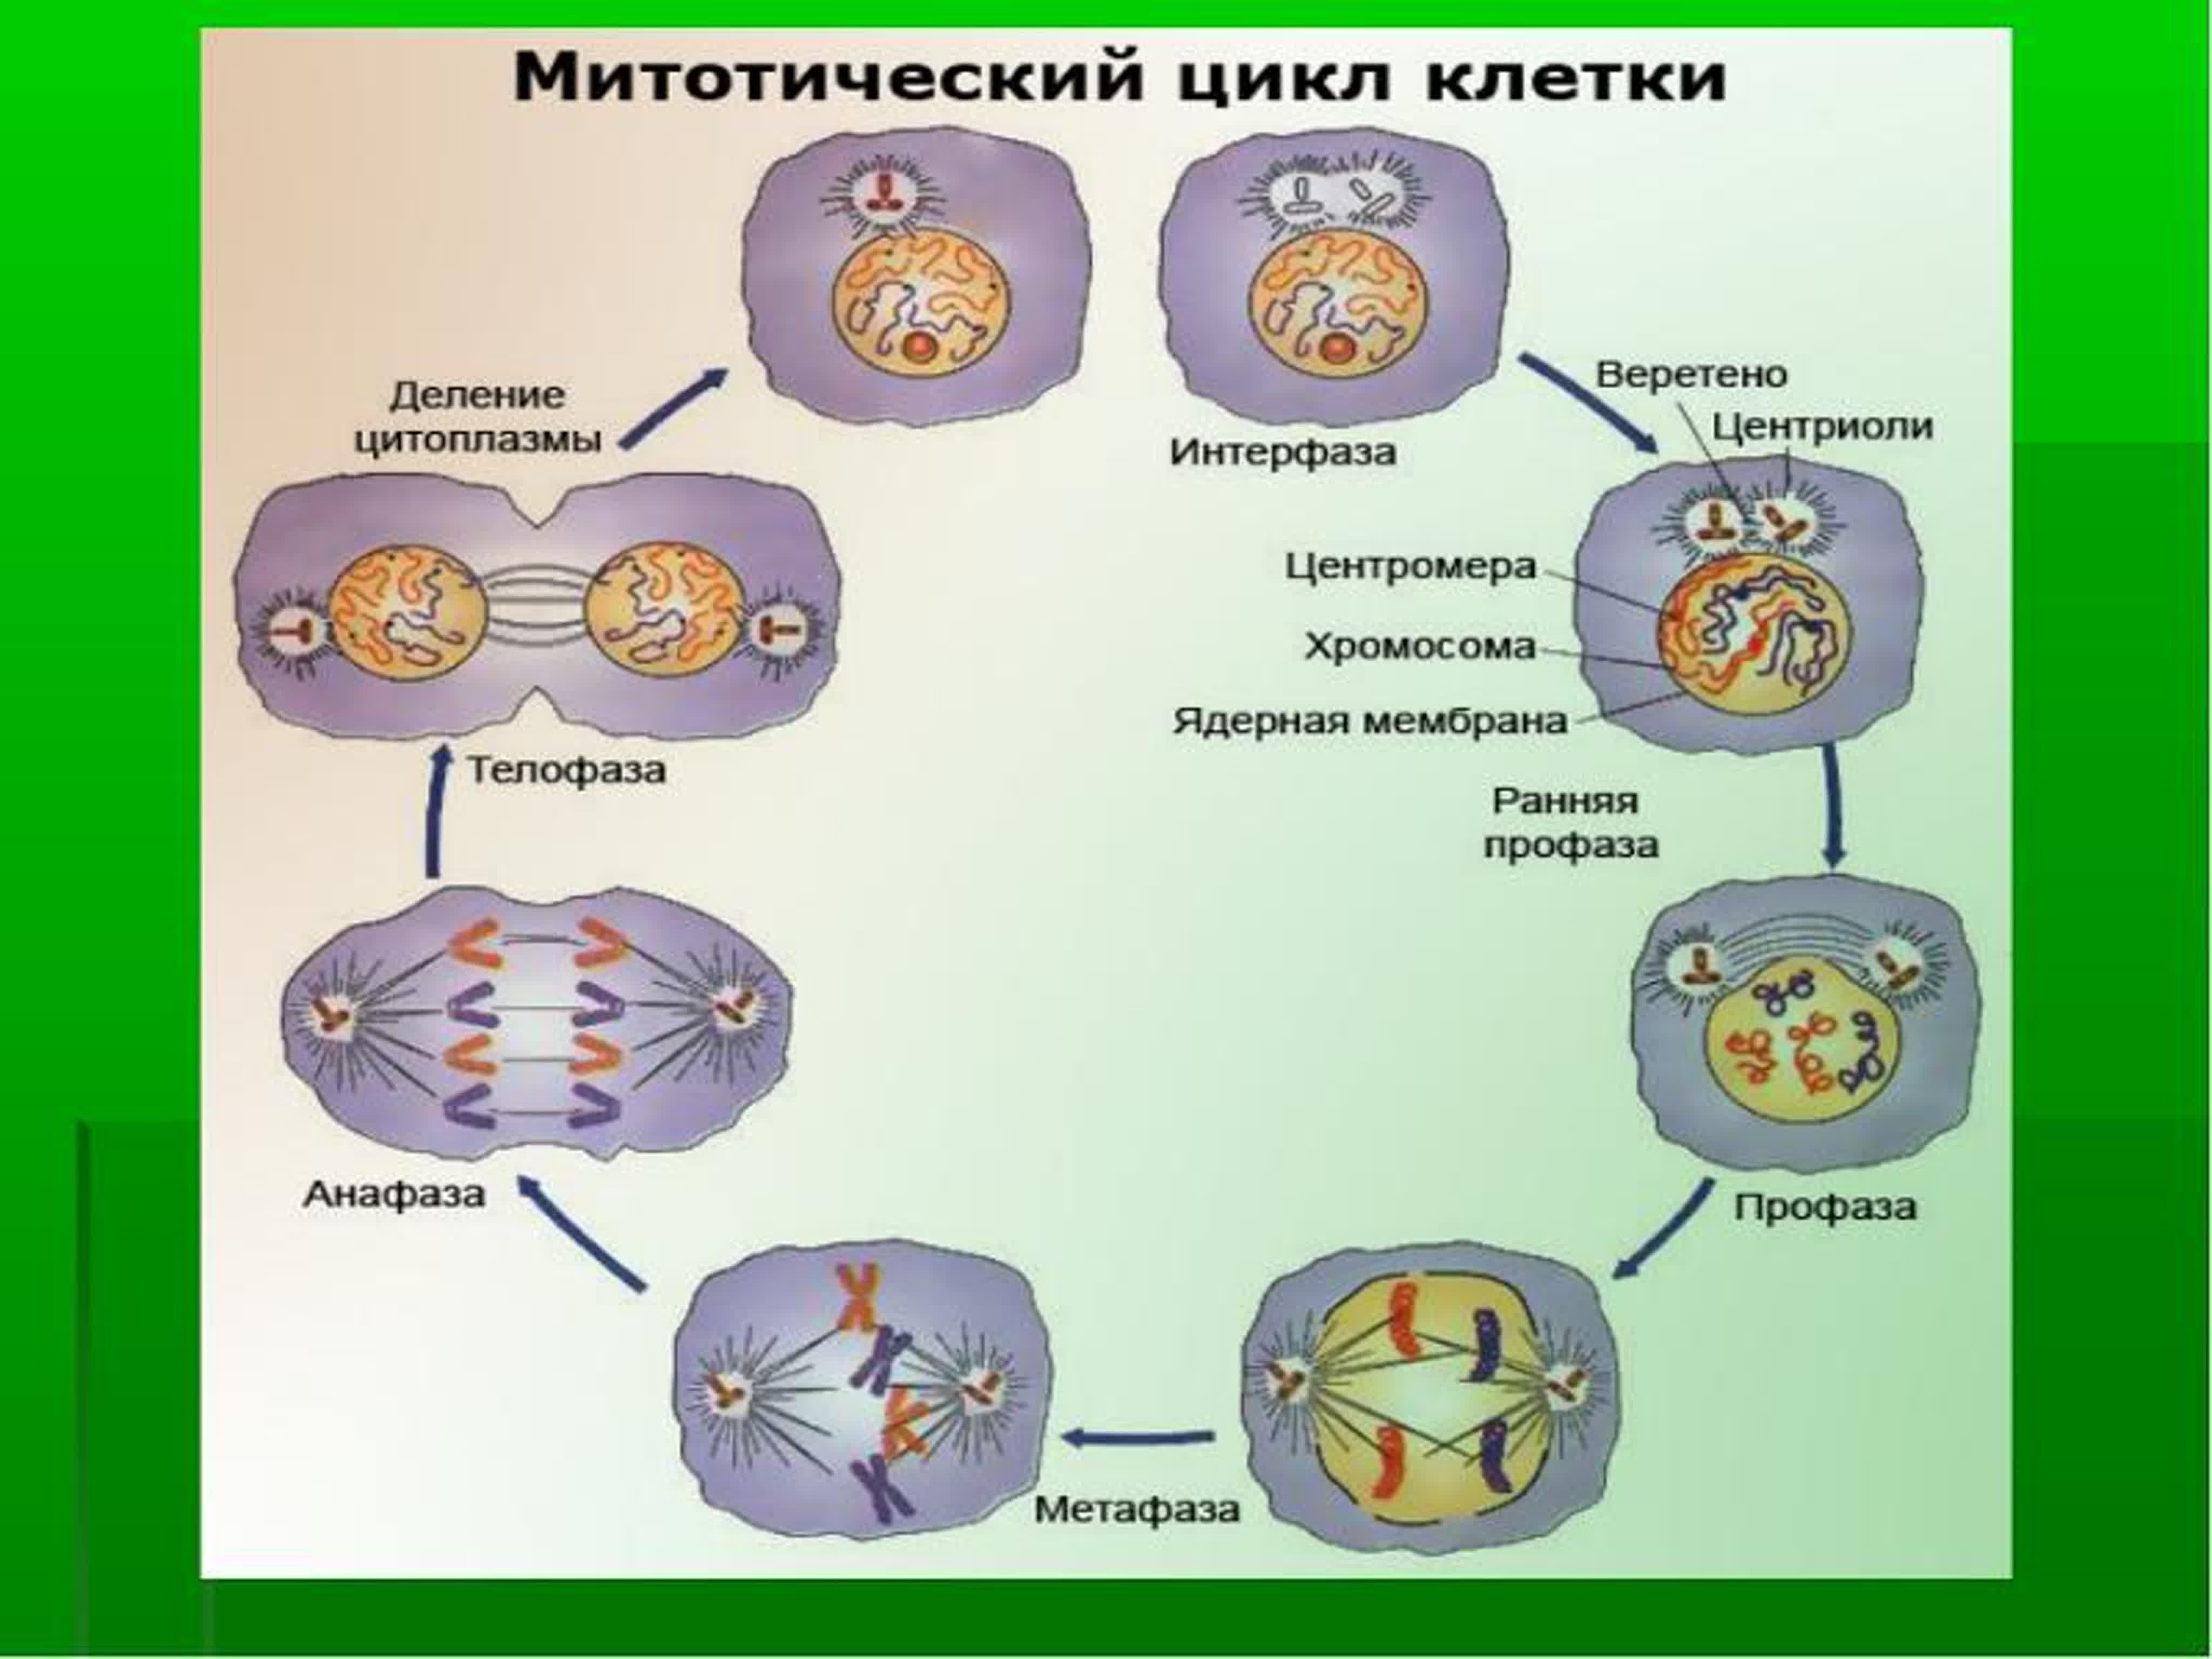 Последовательность процесса размножения человека. Схема стадий жизненного цикла клетки. Клеточный митотический цикл клетки. Жизненный цикл методический циал клеткм. Схема клеточного и митотического циклов.